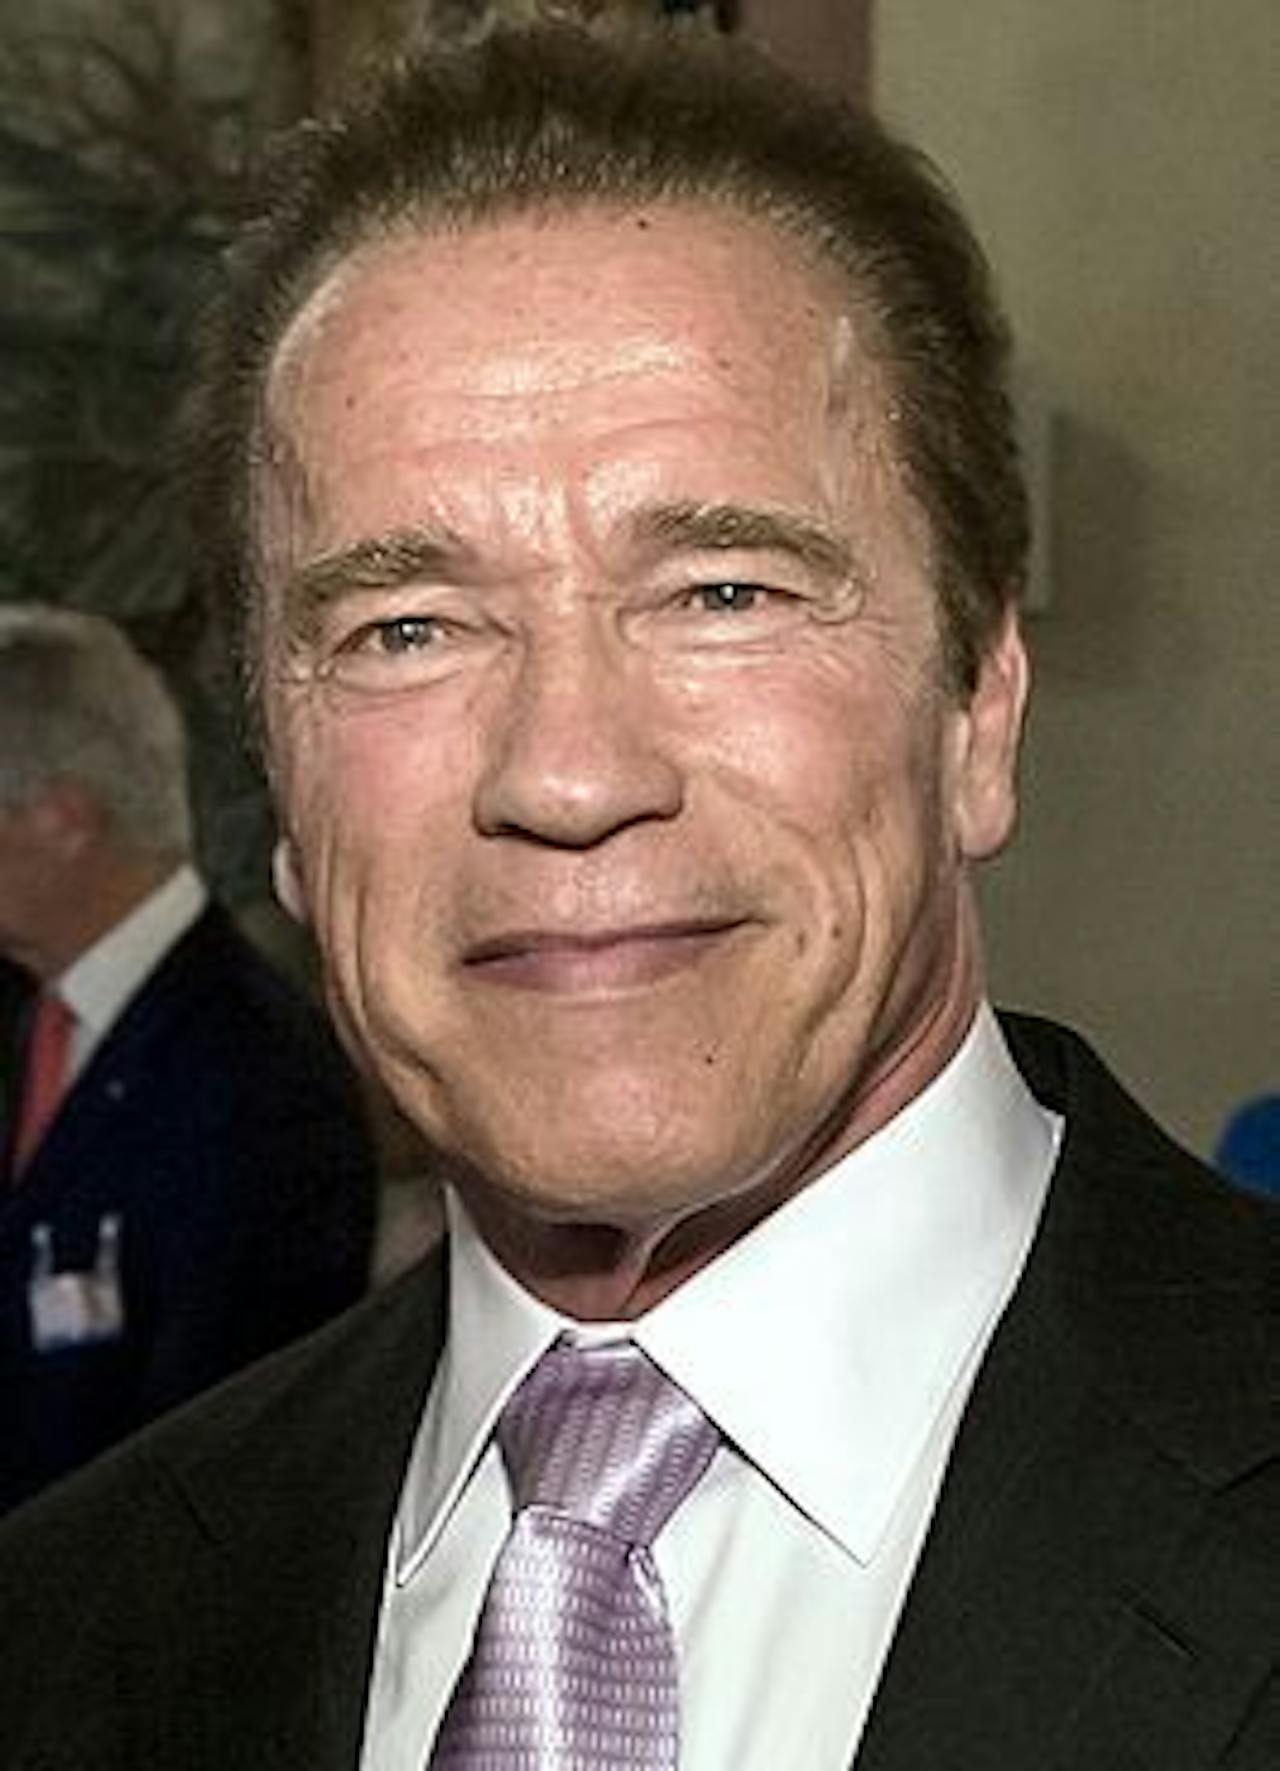 Een kleurenfoto van Arnold Schwarzenegger.